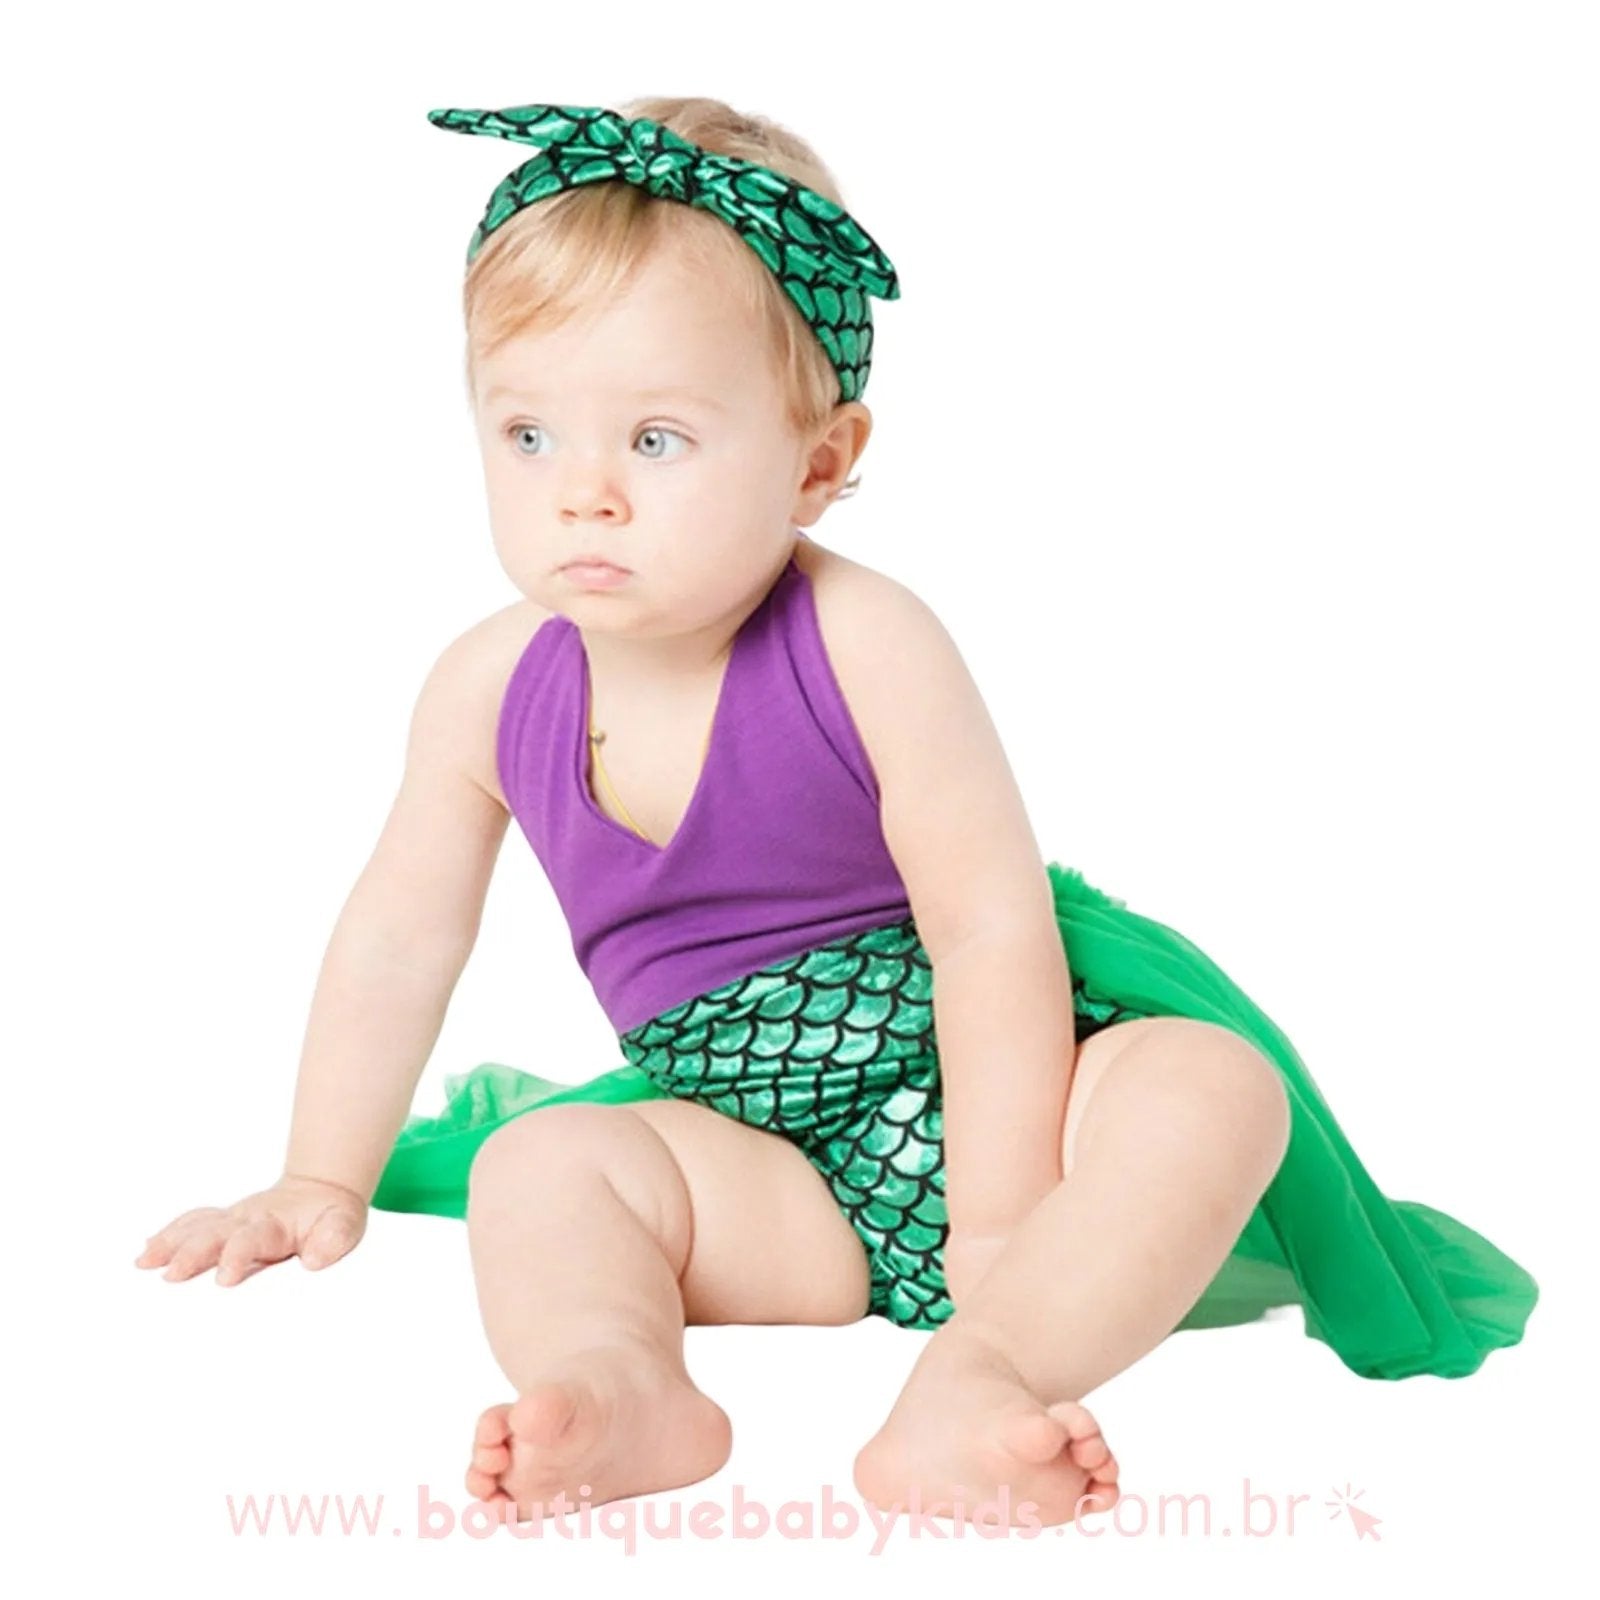 Body Sereia Mesversario c/ Laço - DG Baby Kids - Artigos e roupas infantis